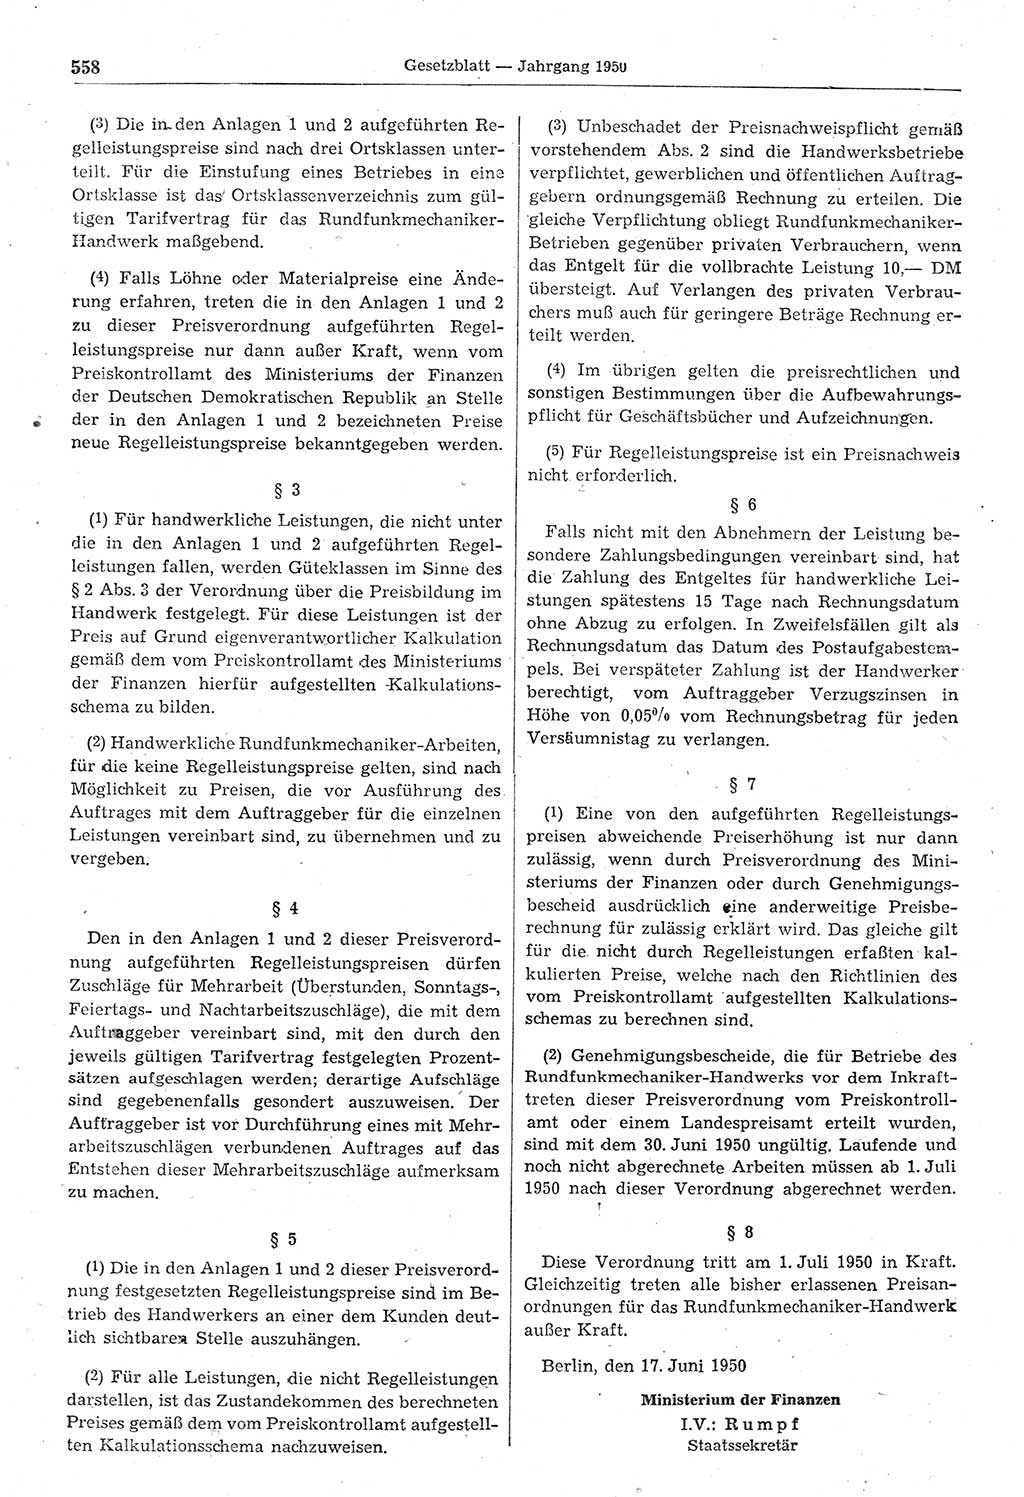 Gesetzblatt (GBl.) der Deutschen Demokratischen Republik (DDR) 1950, Seite 558 (GBl. DDR 1950, S. 558)